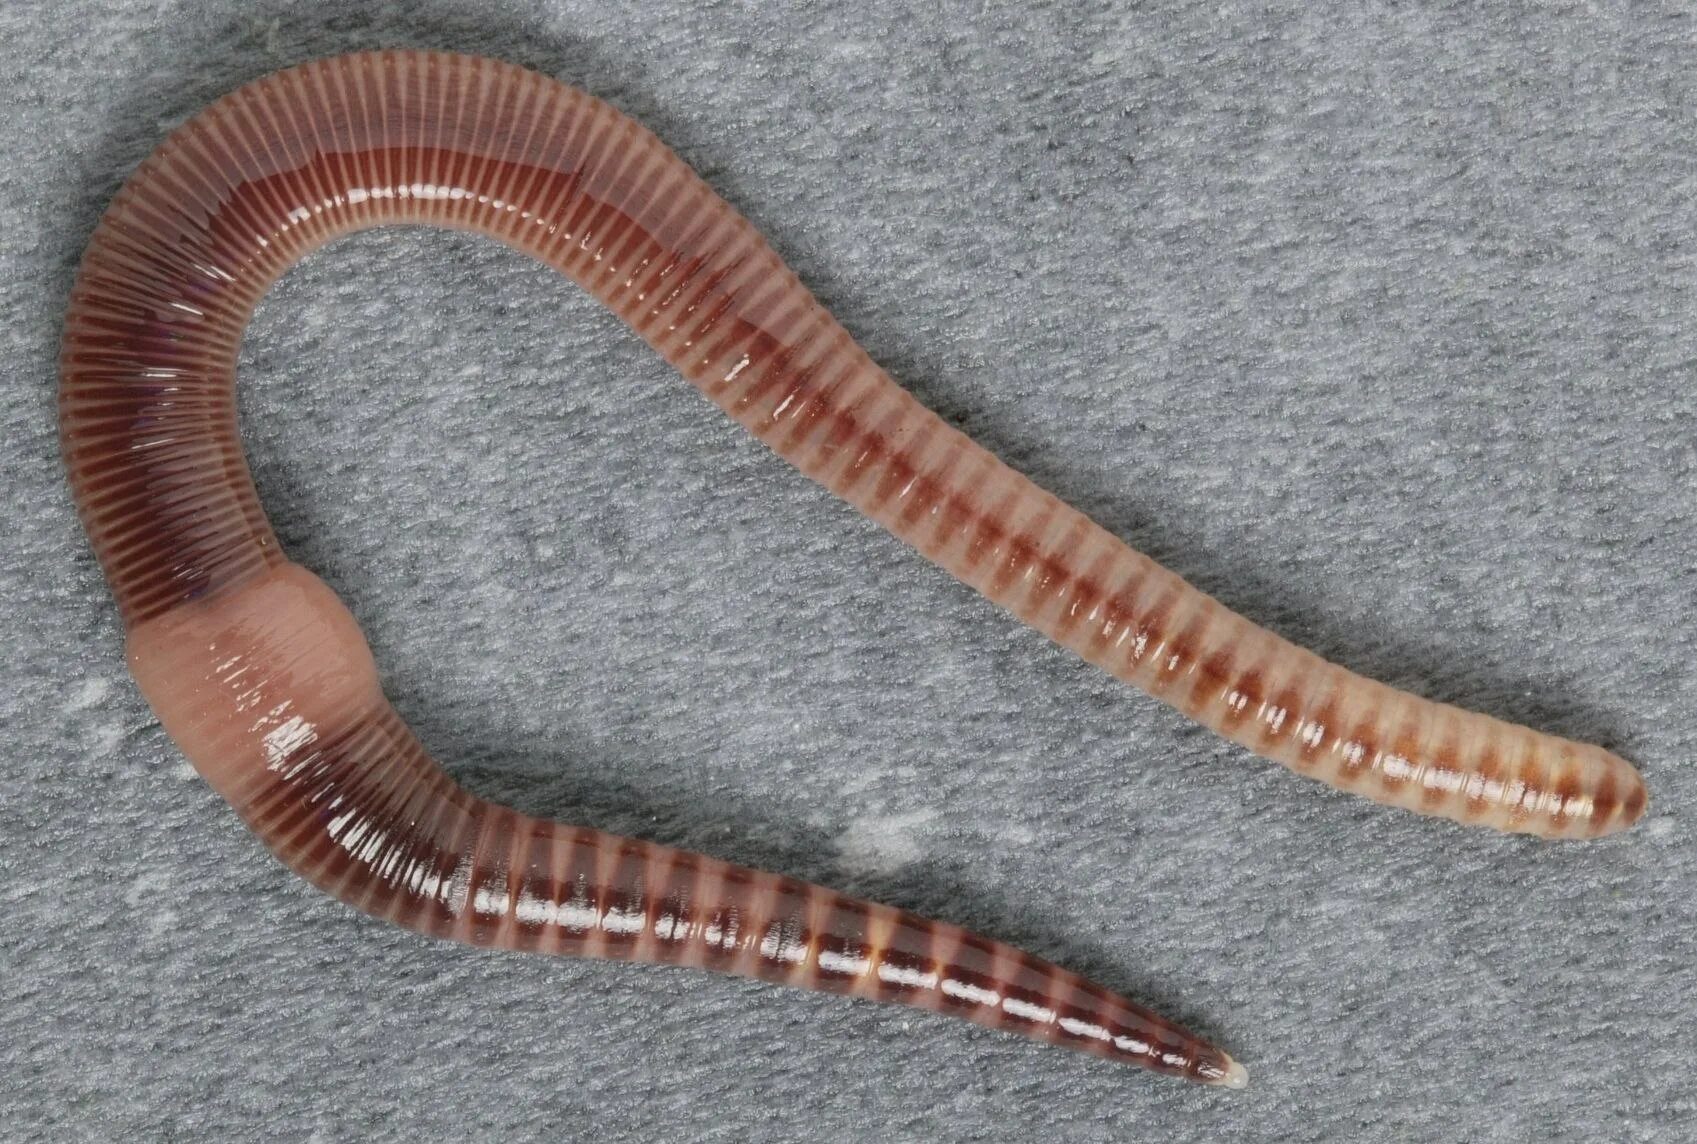 Древний кольчатый червь. Малошетниковфй крльчатые черви. Малощетинковые кольчатые черви. Малощетинковые черви (дождевой червь). Oligochaeta (Малощетинковые черви).